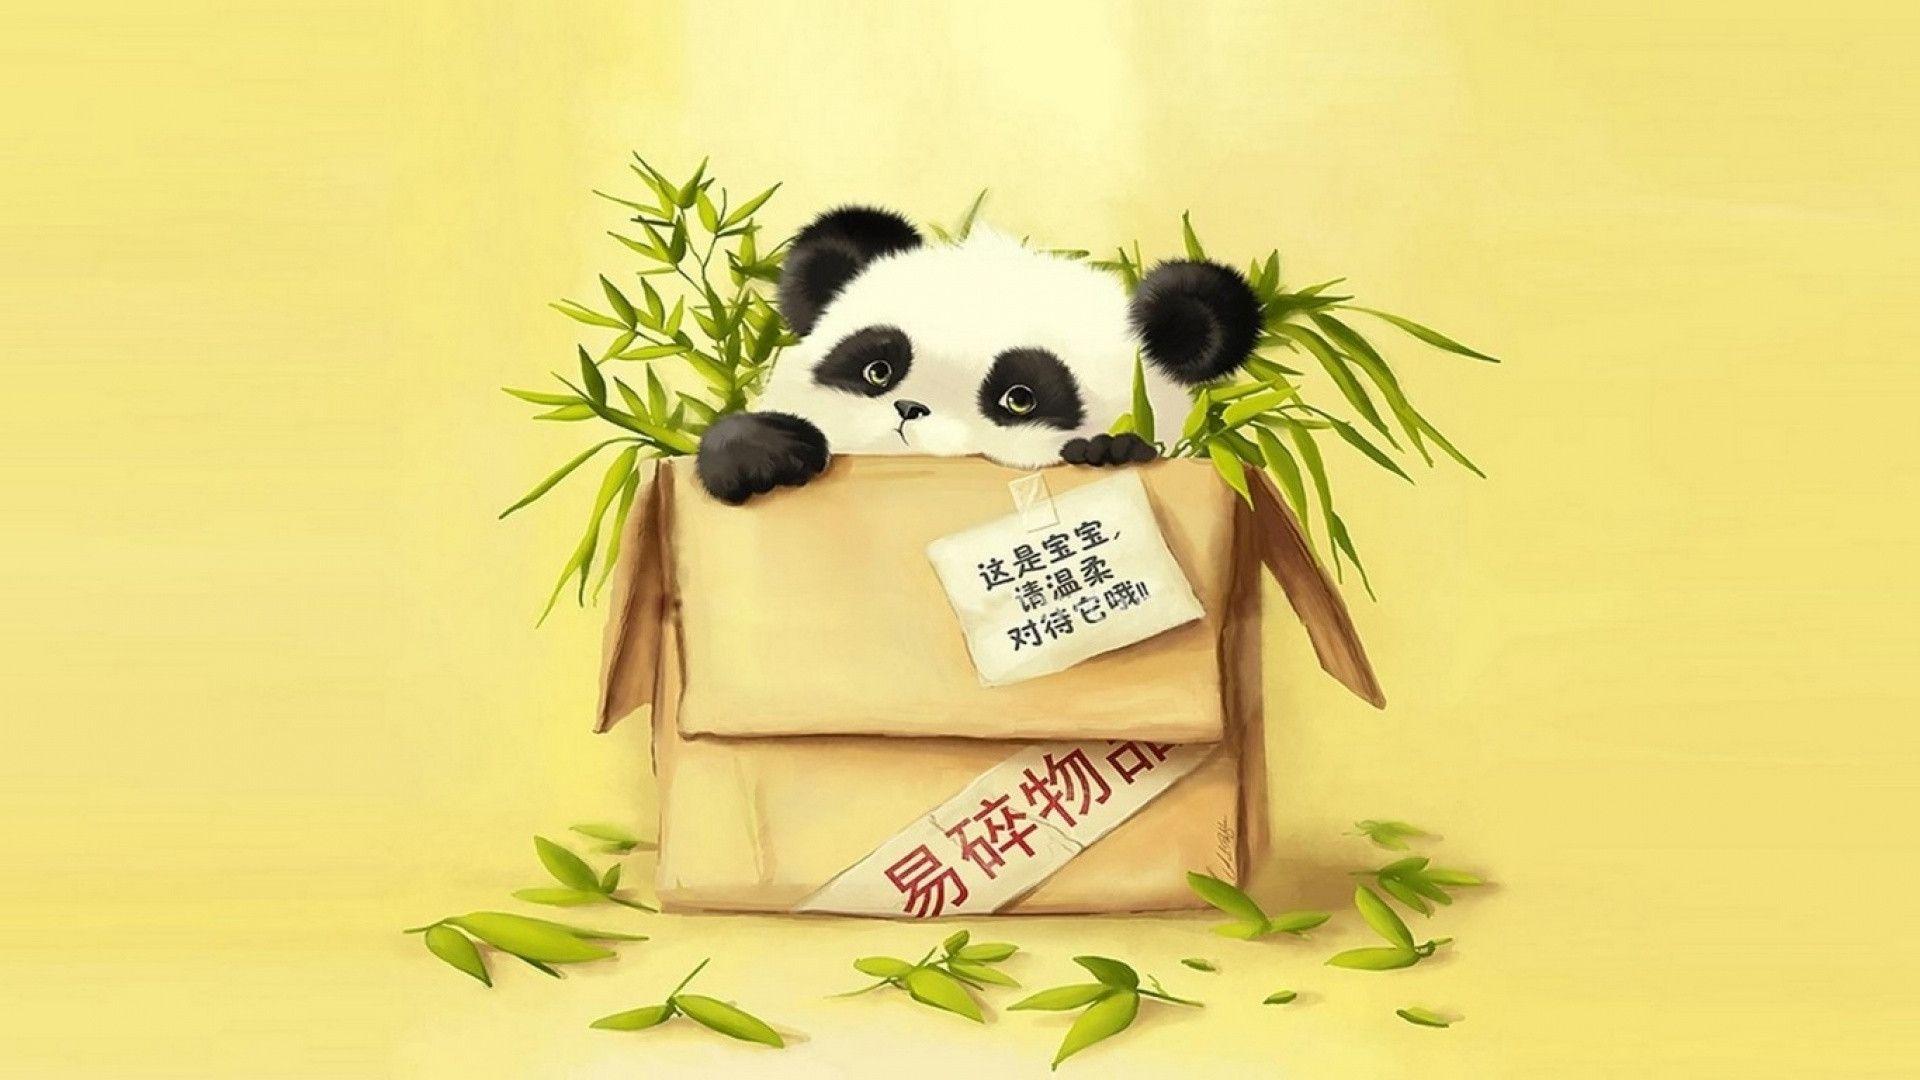 For: Panda Wallpaper, 1920x1080